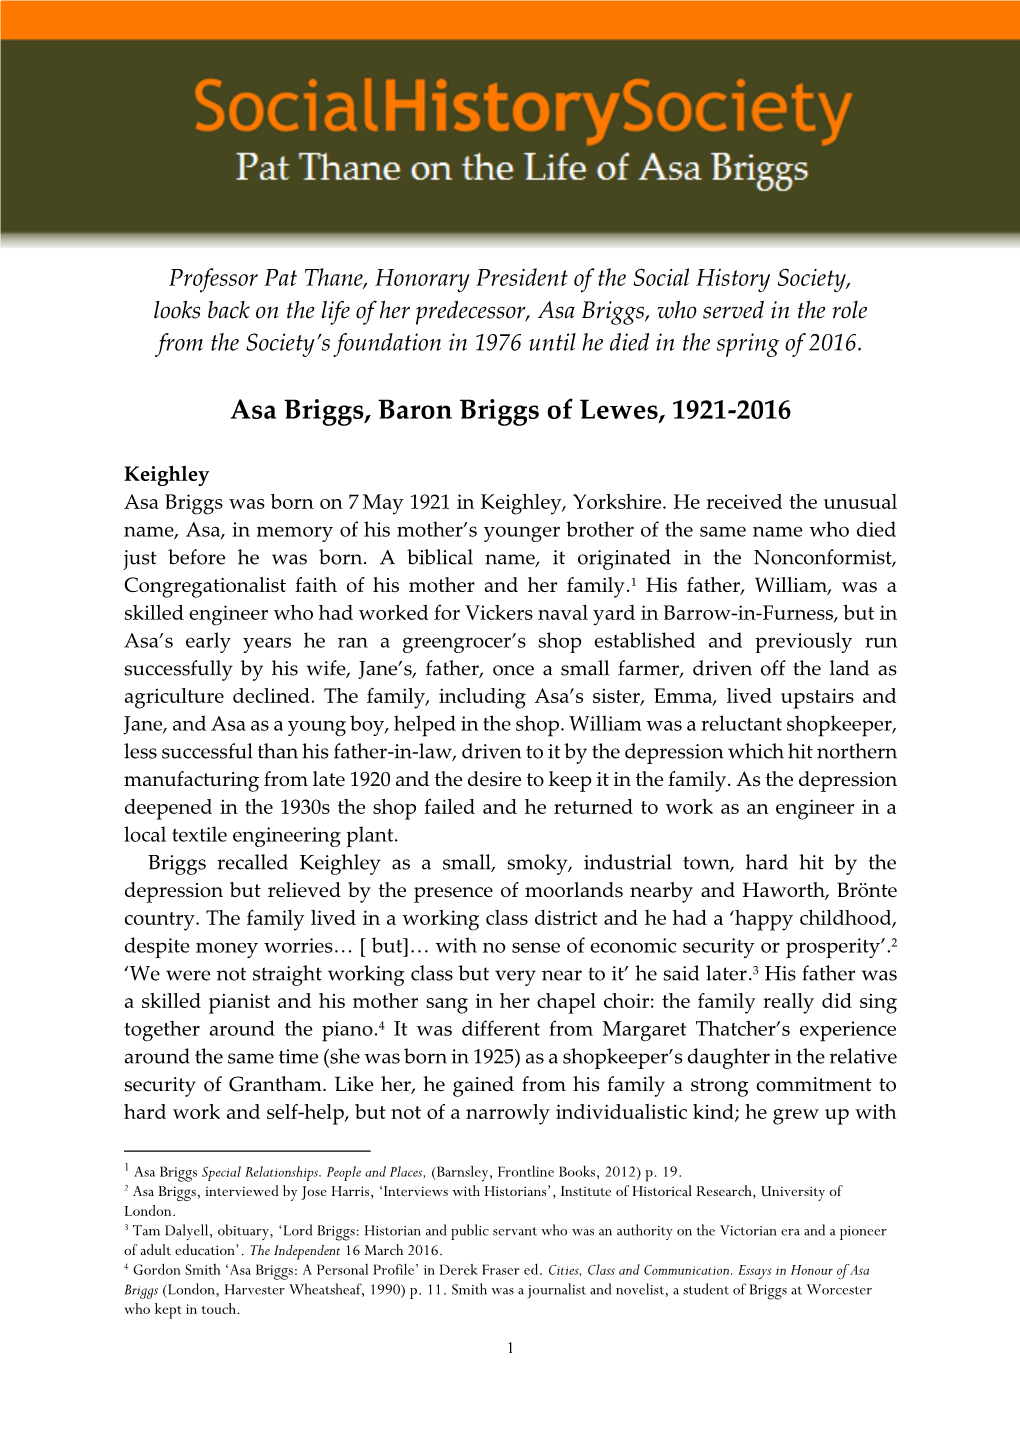 Asa Briggs, Baron Briggs of Lewes, 1921-2016